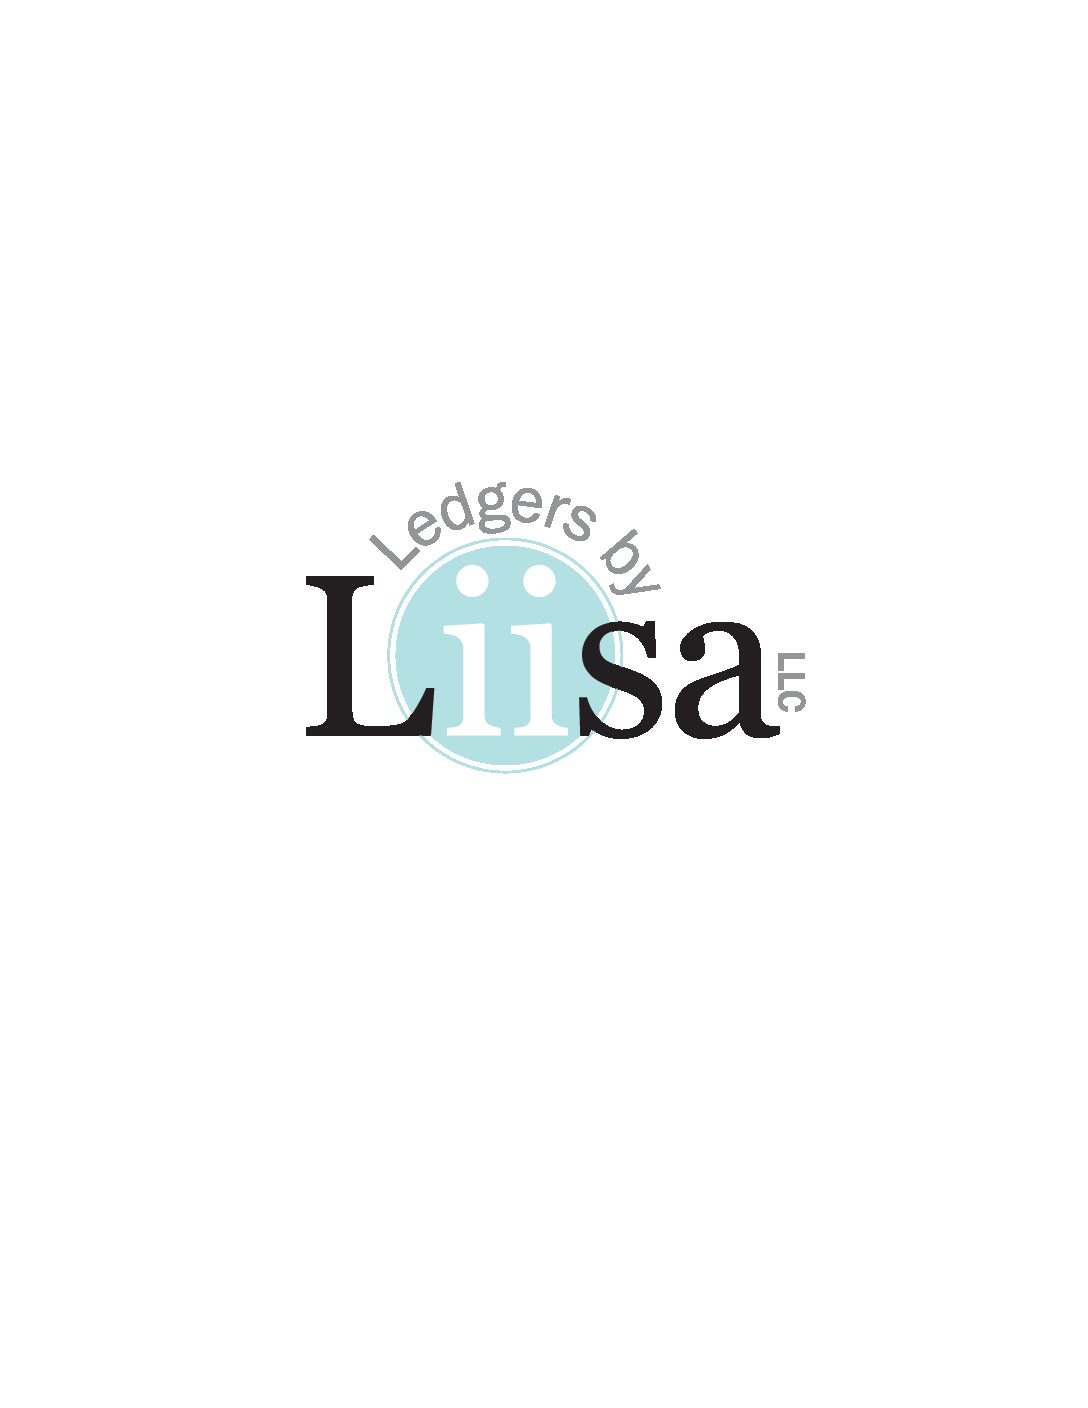 Ledgers By Liisa, LLC